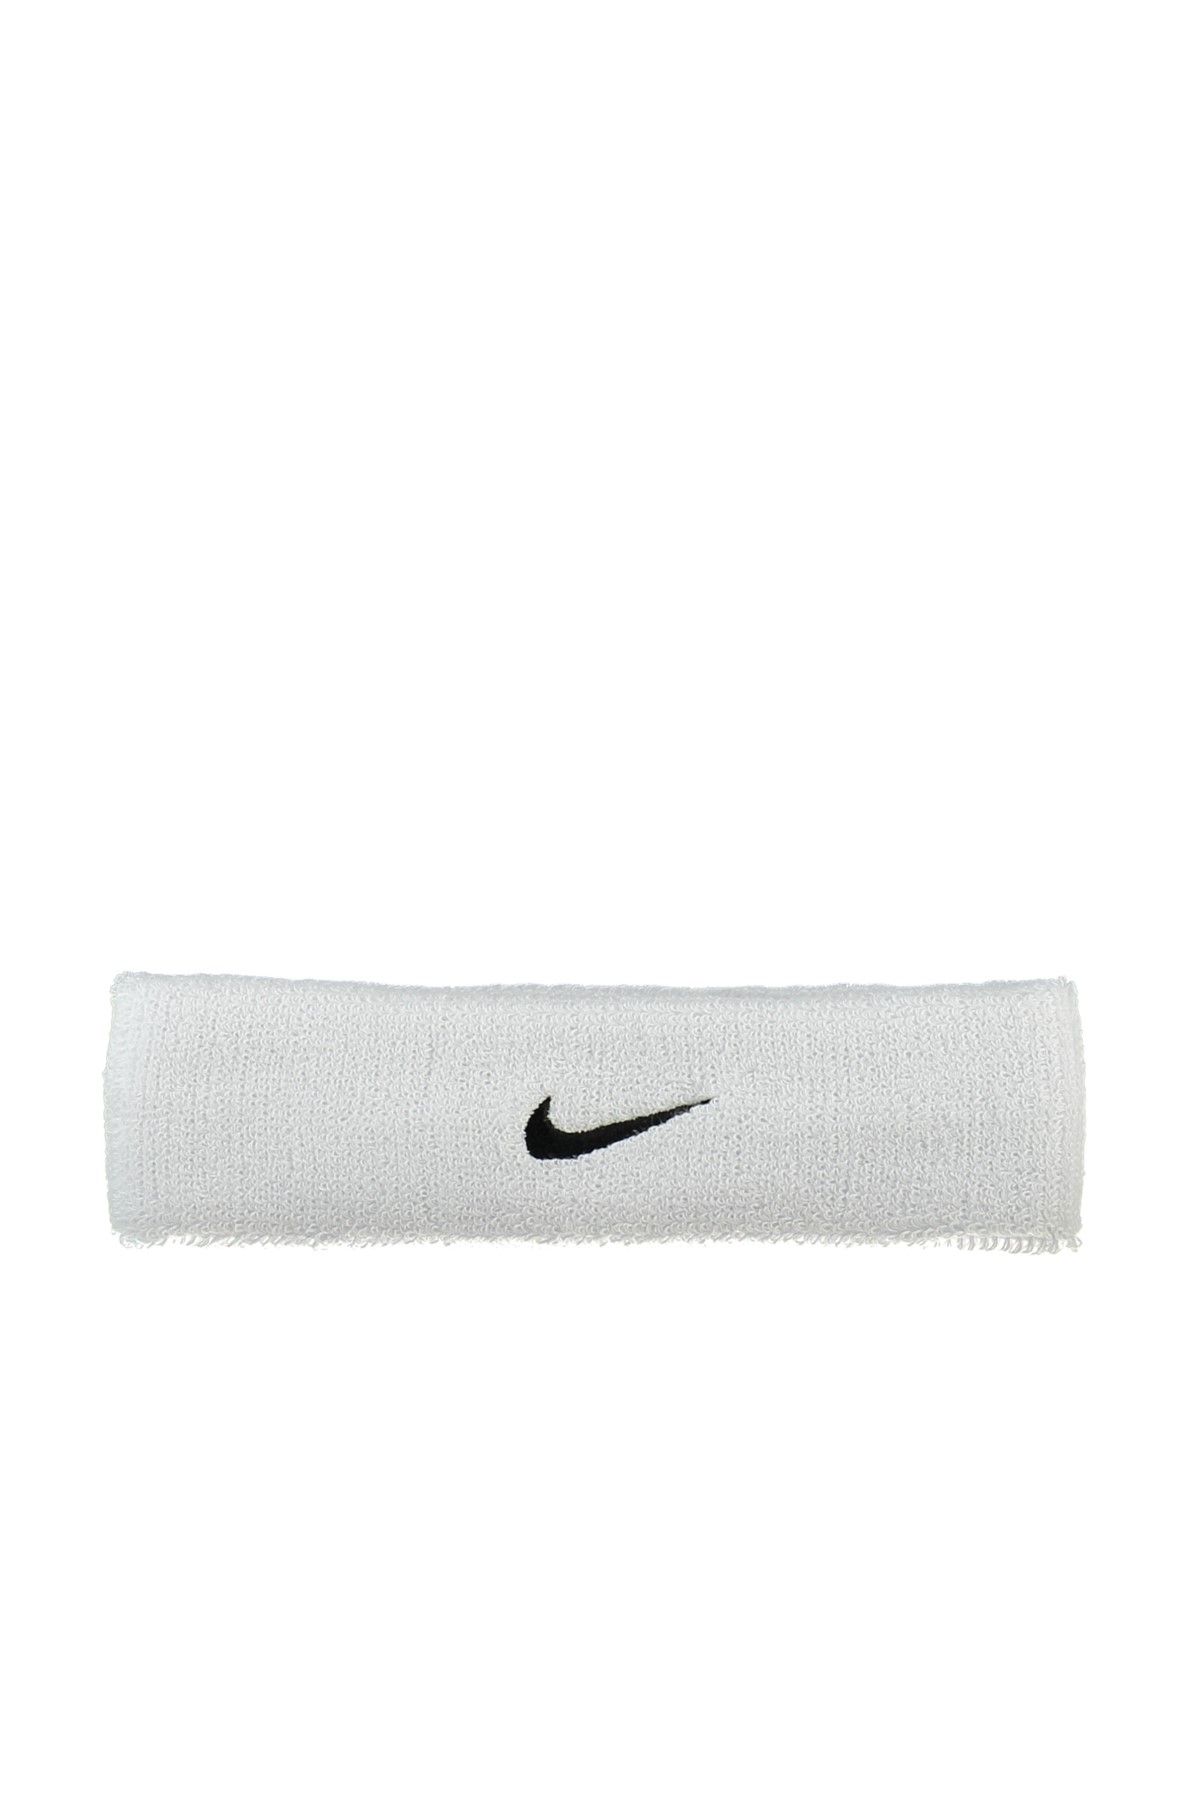 Nike Unisex Sporcu Aksesuarları - Swoosh Headband Saç Bandı N.NN.07.101.OS